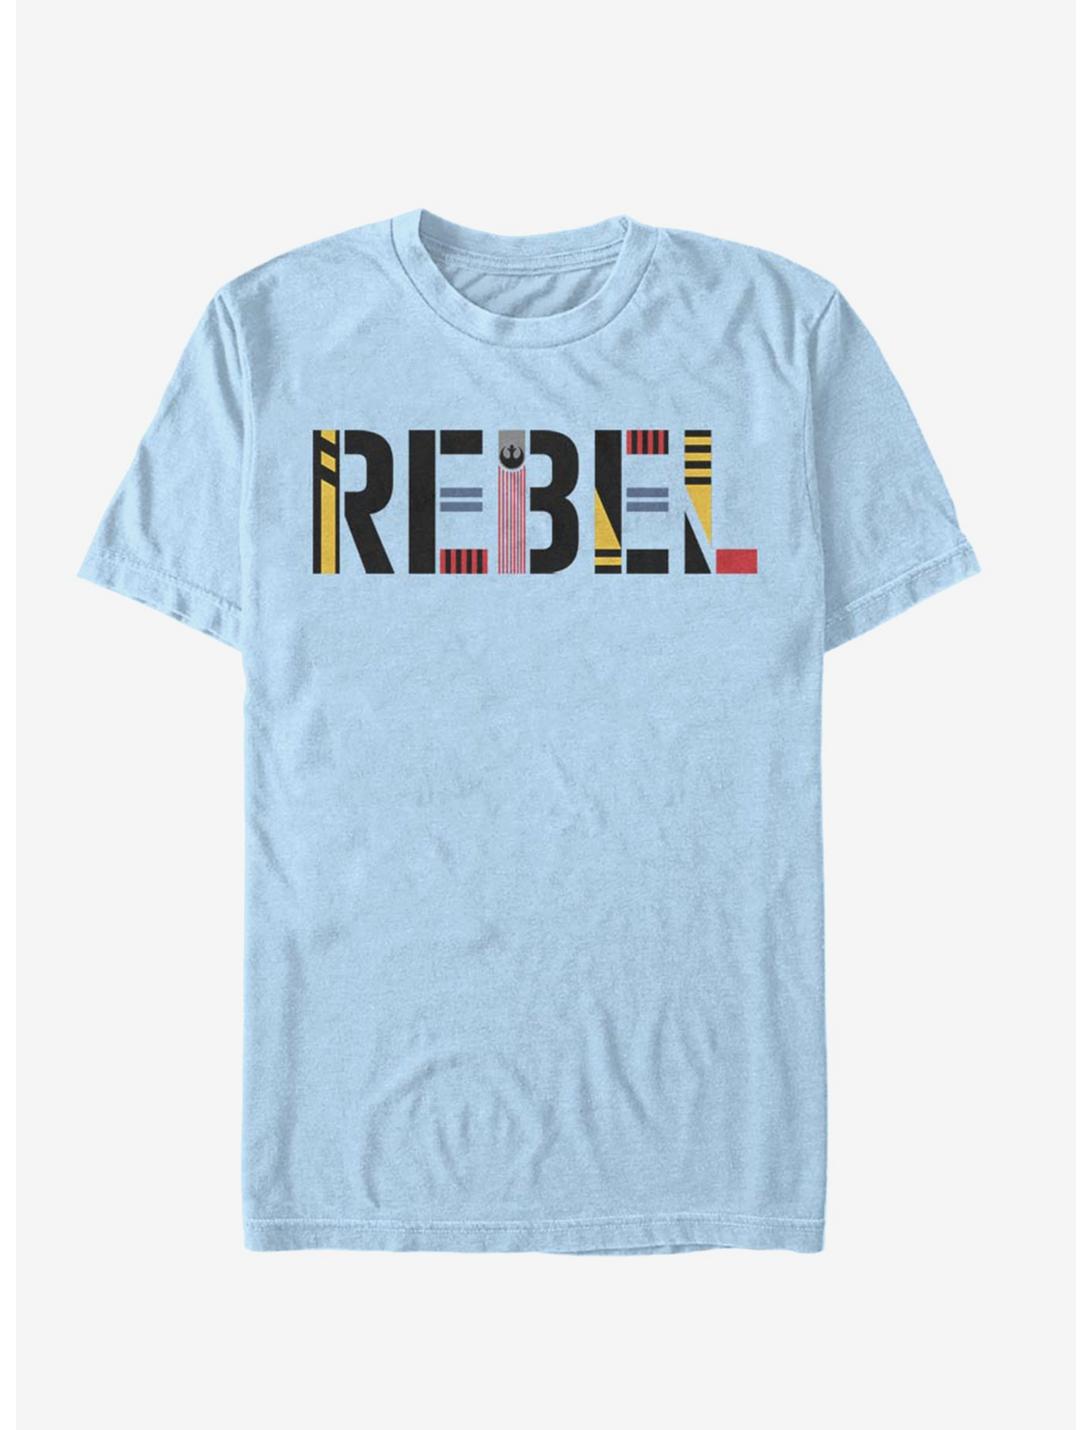 Star Wars Episode IX The Rise Of Skywalker Rebel Simple T-Shirt, , hi-res